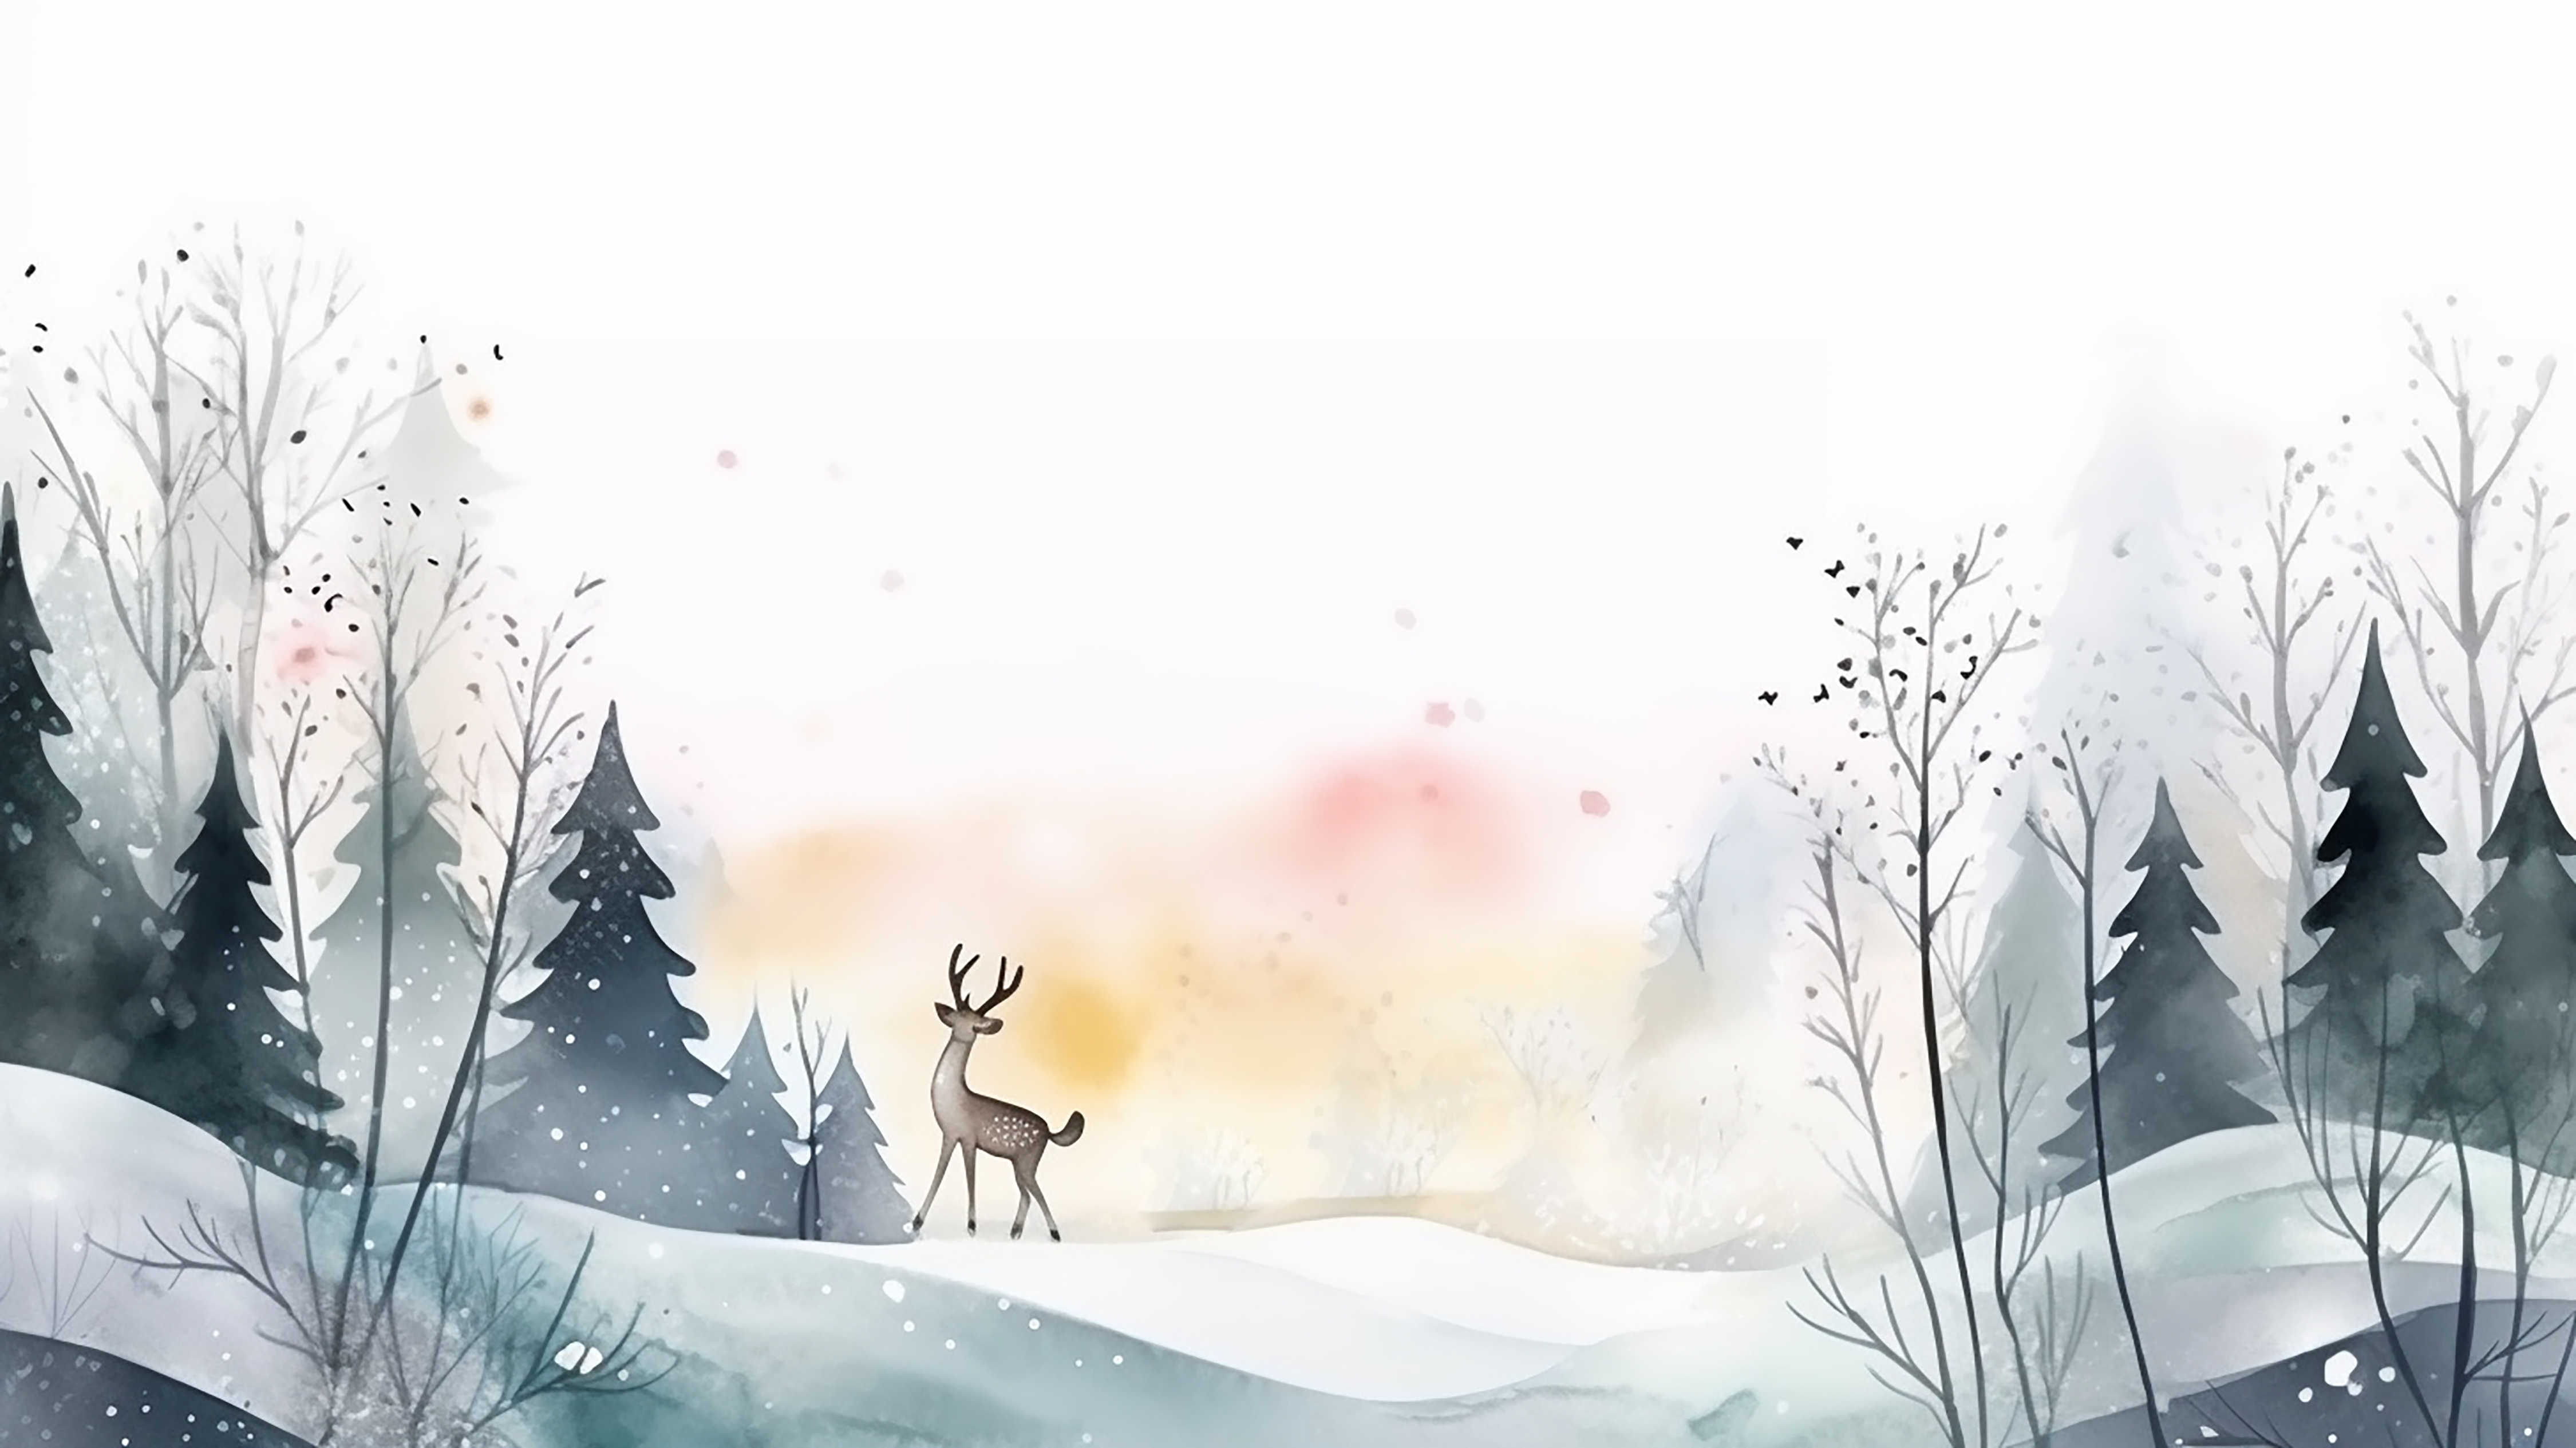 冬季雪后美景插画图片